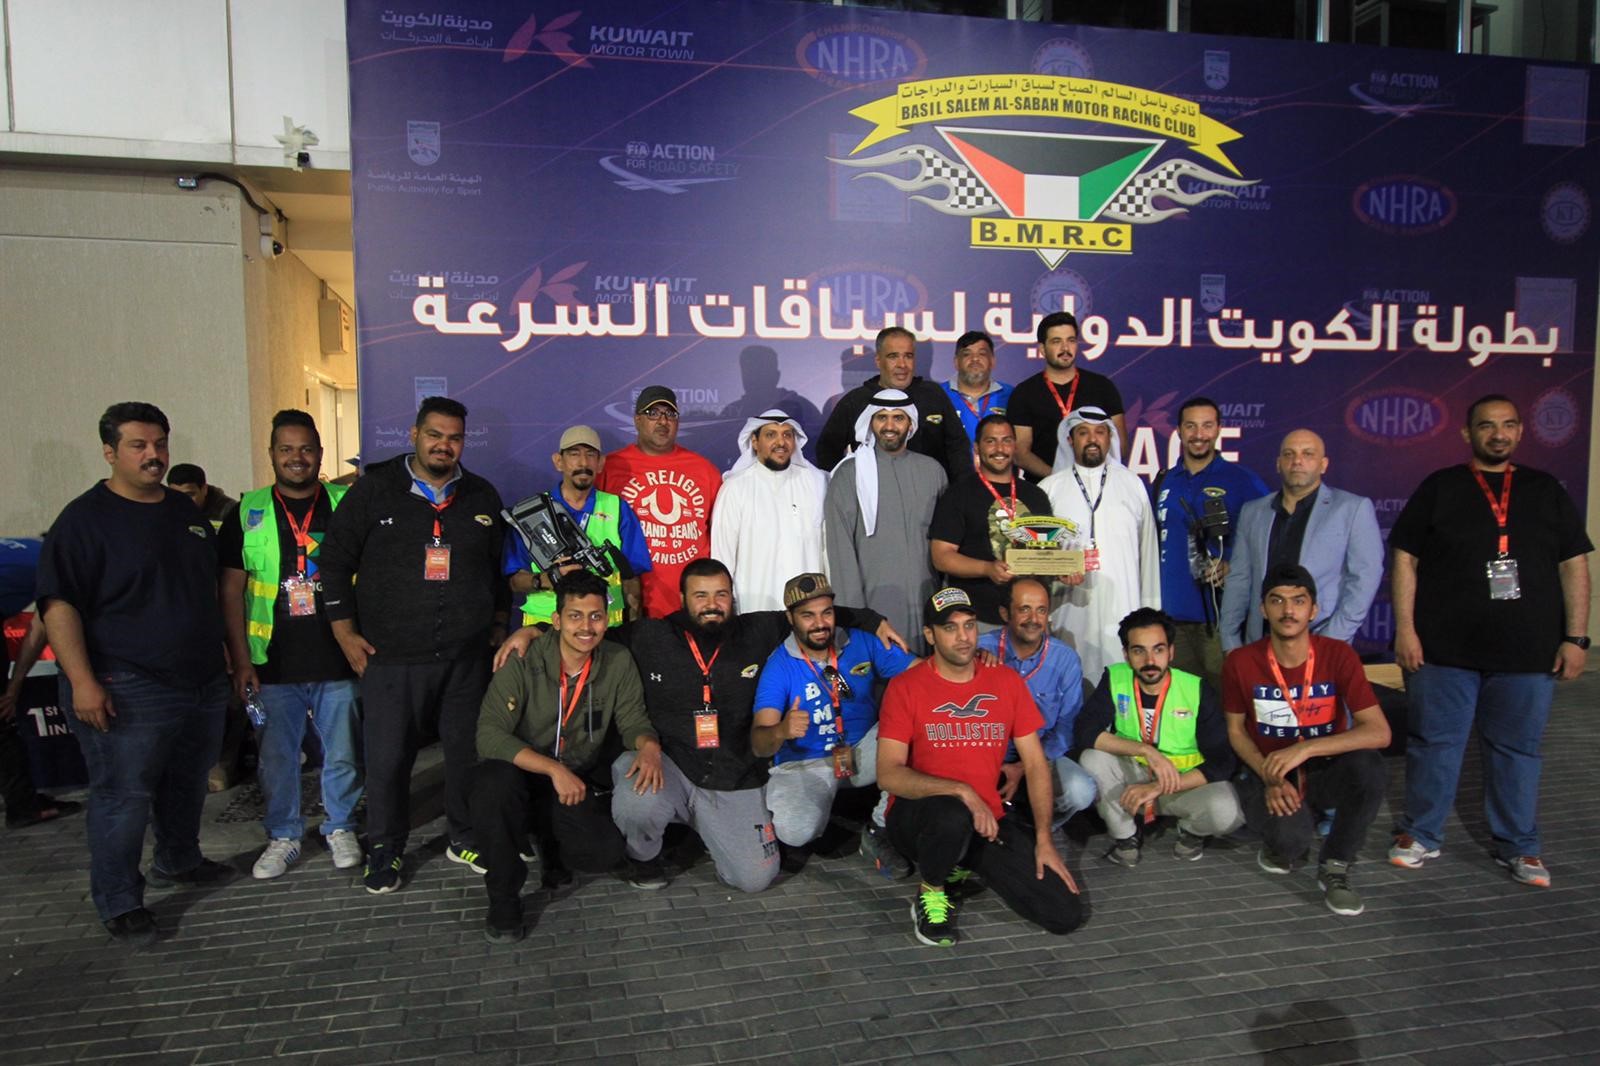 تتويج الفائزين ببطولة الكويت الدولية لسباقات السرعة (دراغ.ريس) التي ينظمها نادي باسل الصباح لرياضة السيارات والدراجات النارية